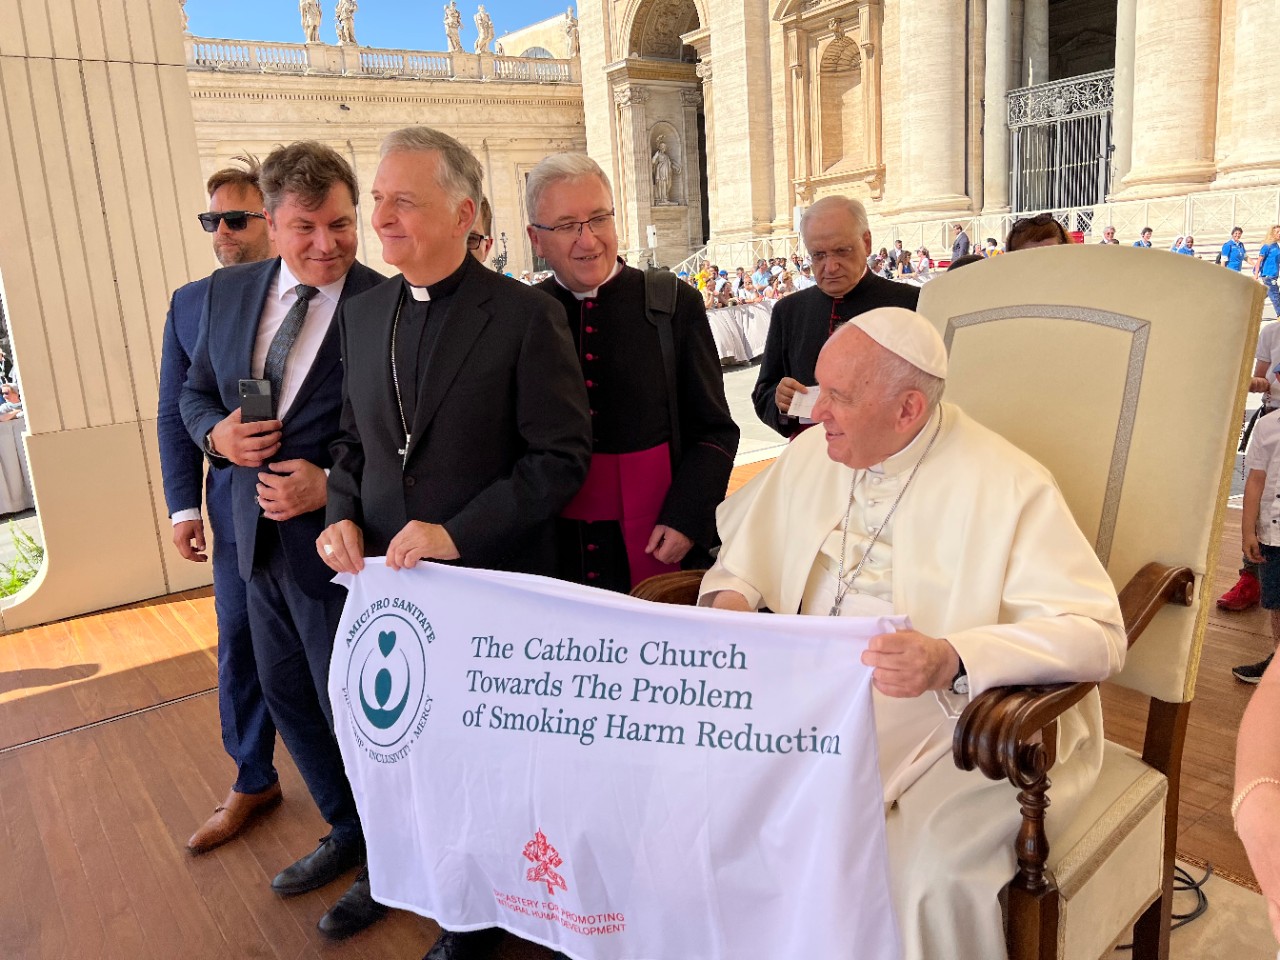 “La Iglesia católica frente a la cuestión de la reducción de los daños del tabaco”